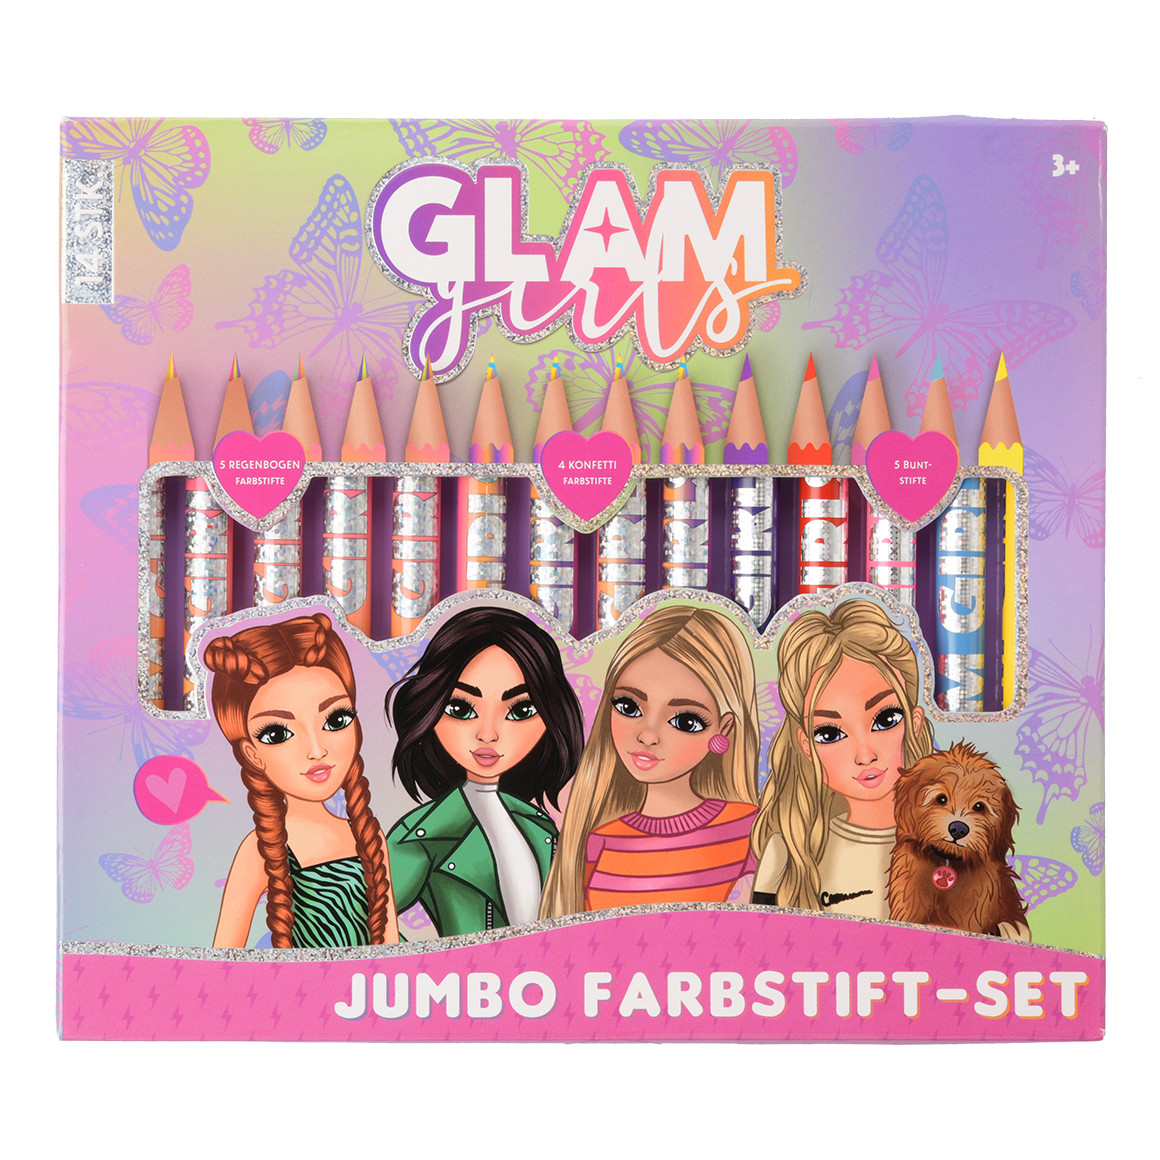 Glam Girls Farbstift-Set mit 14 Stiften von Topolino